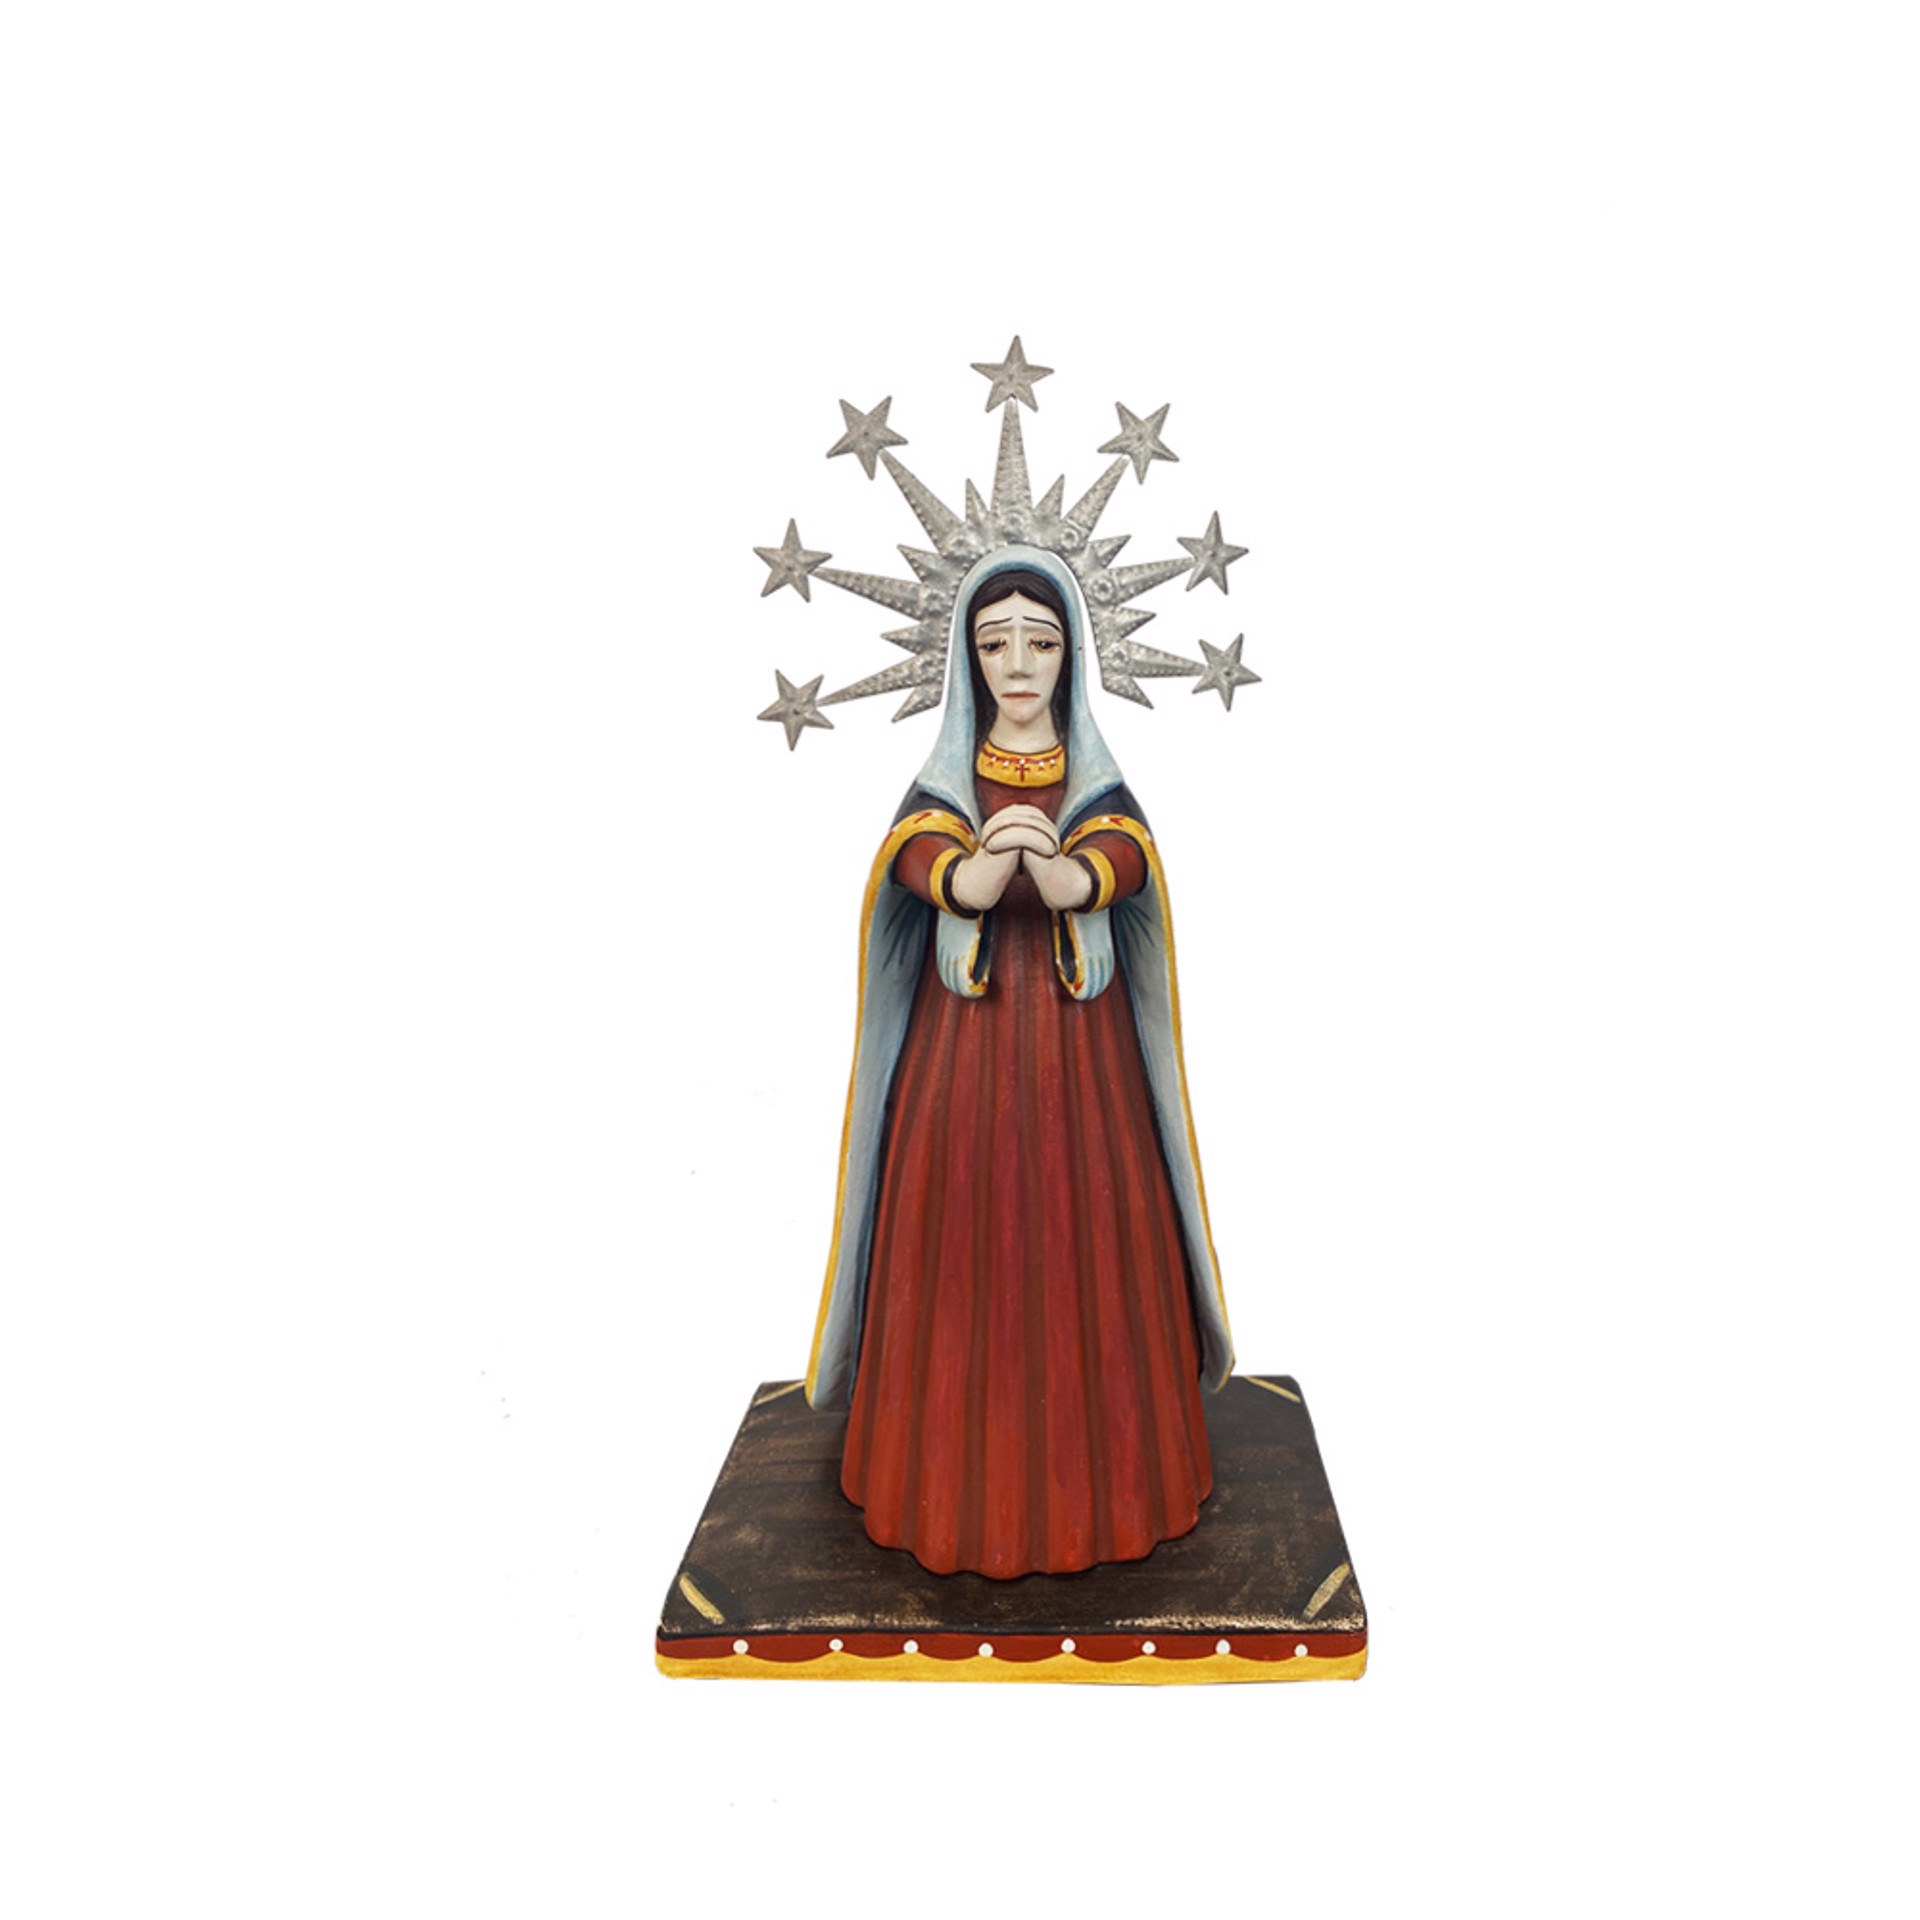 Nuestra Senora de Dolores by Artist Unknown